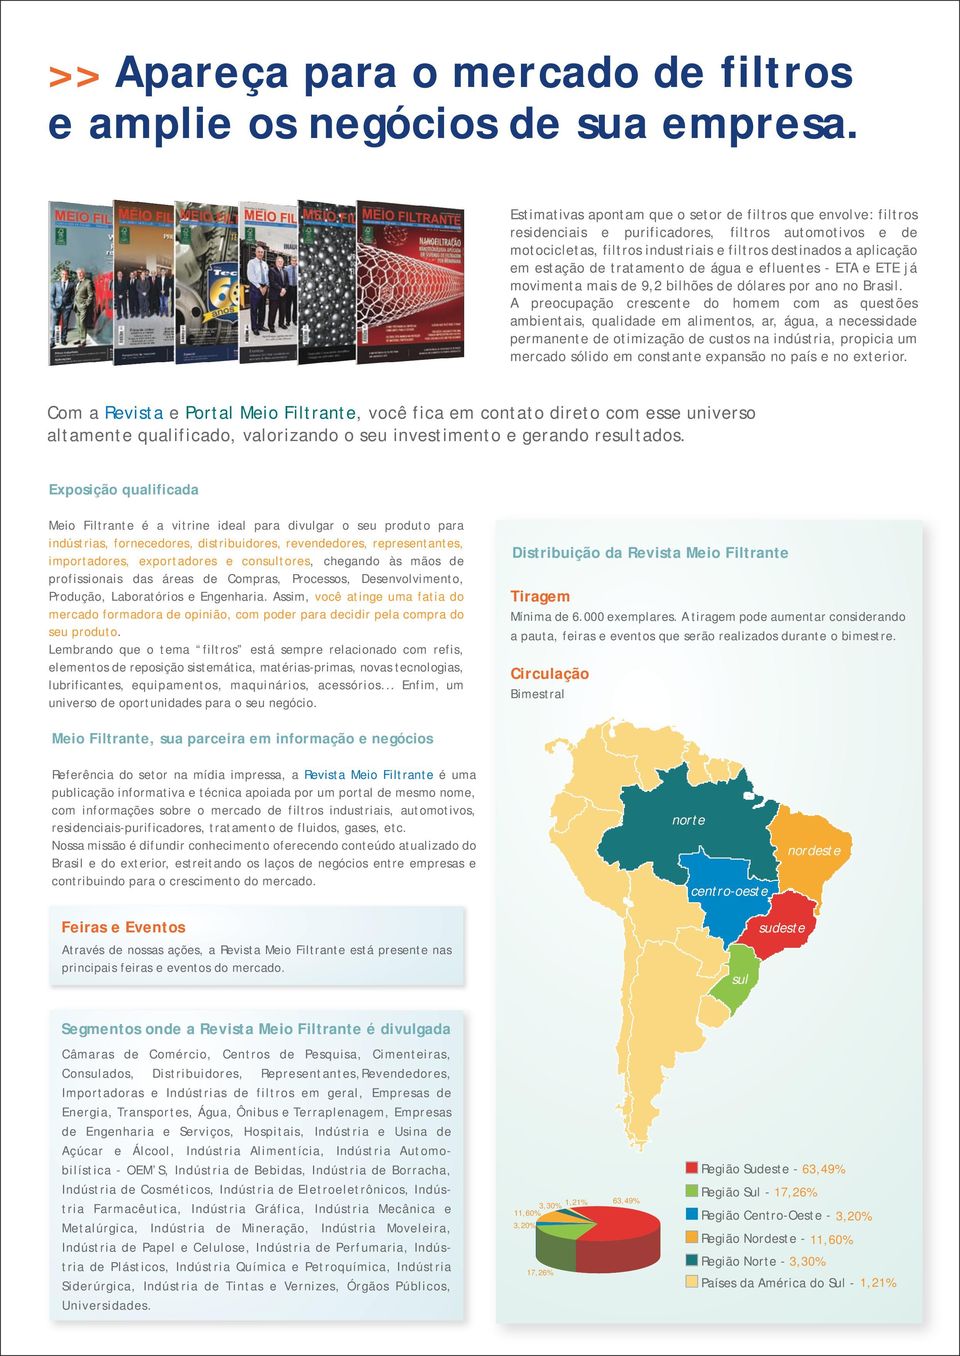 tratamento de água e efluentes - ETA e ETE já movimenta mais de 9,2 bilhões de dólares por ano no Brasil.